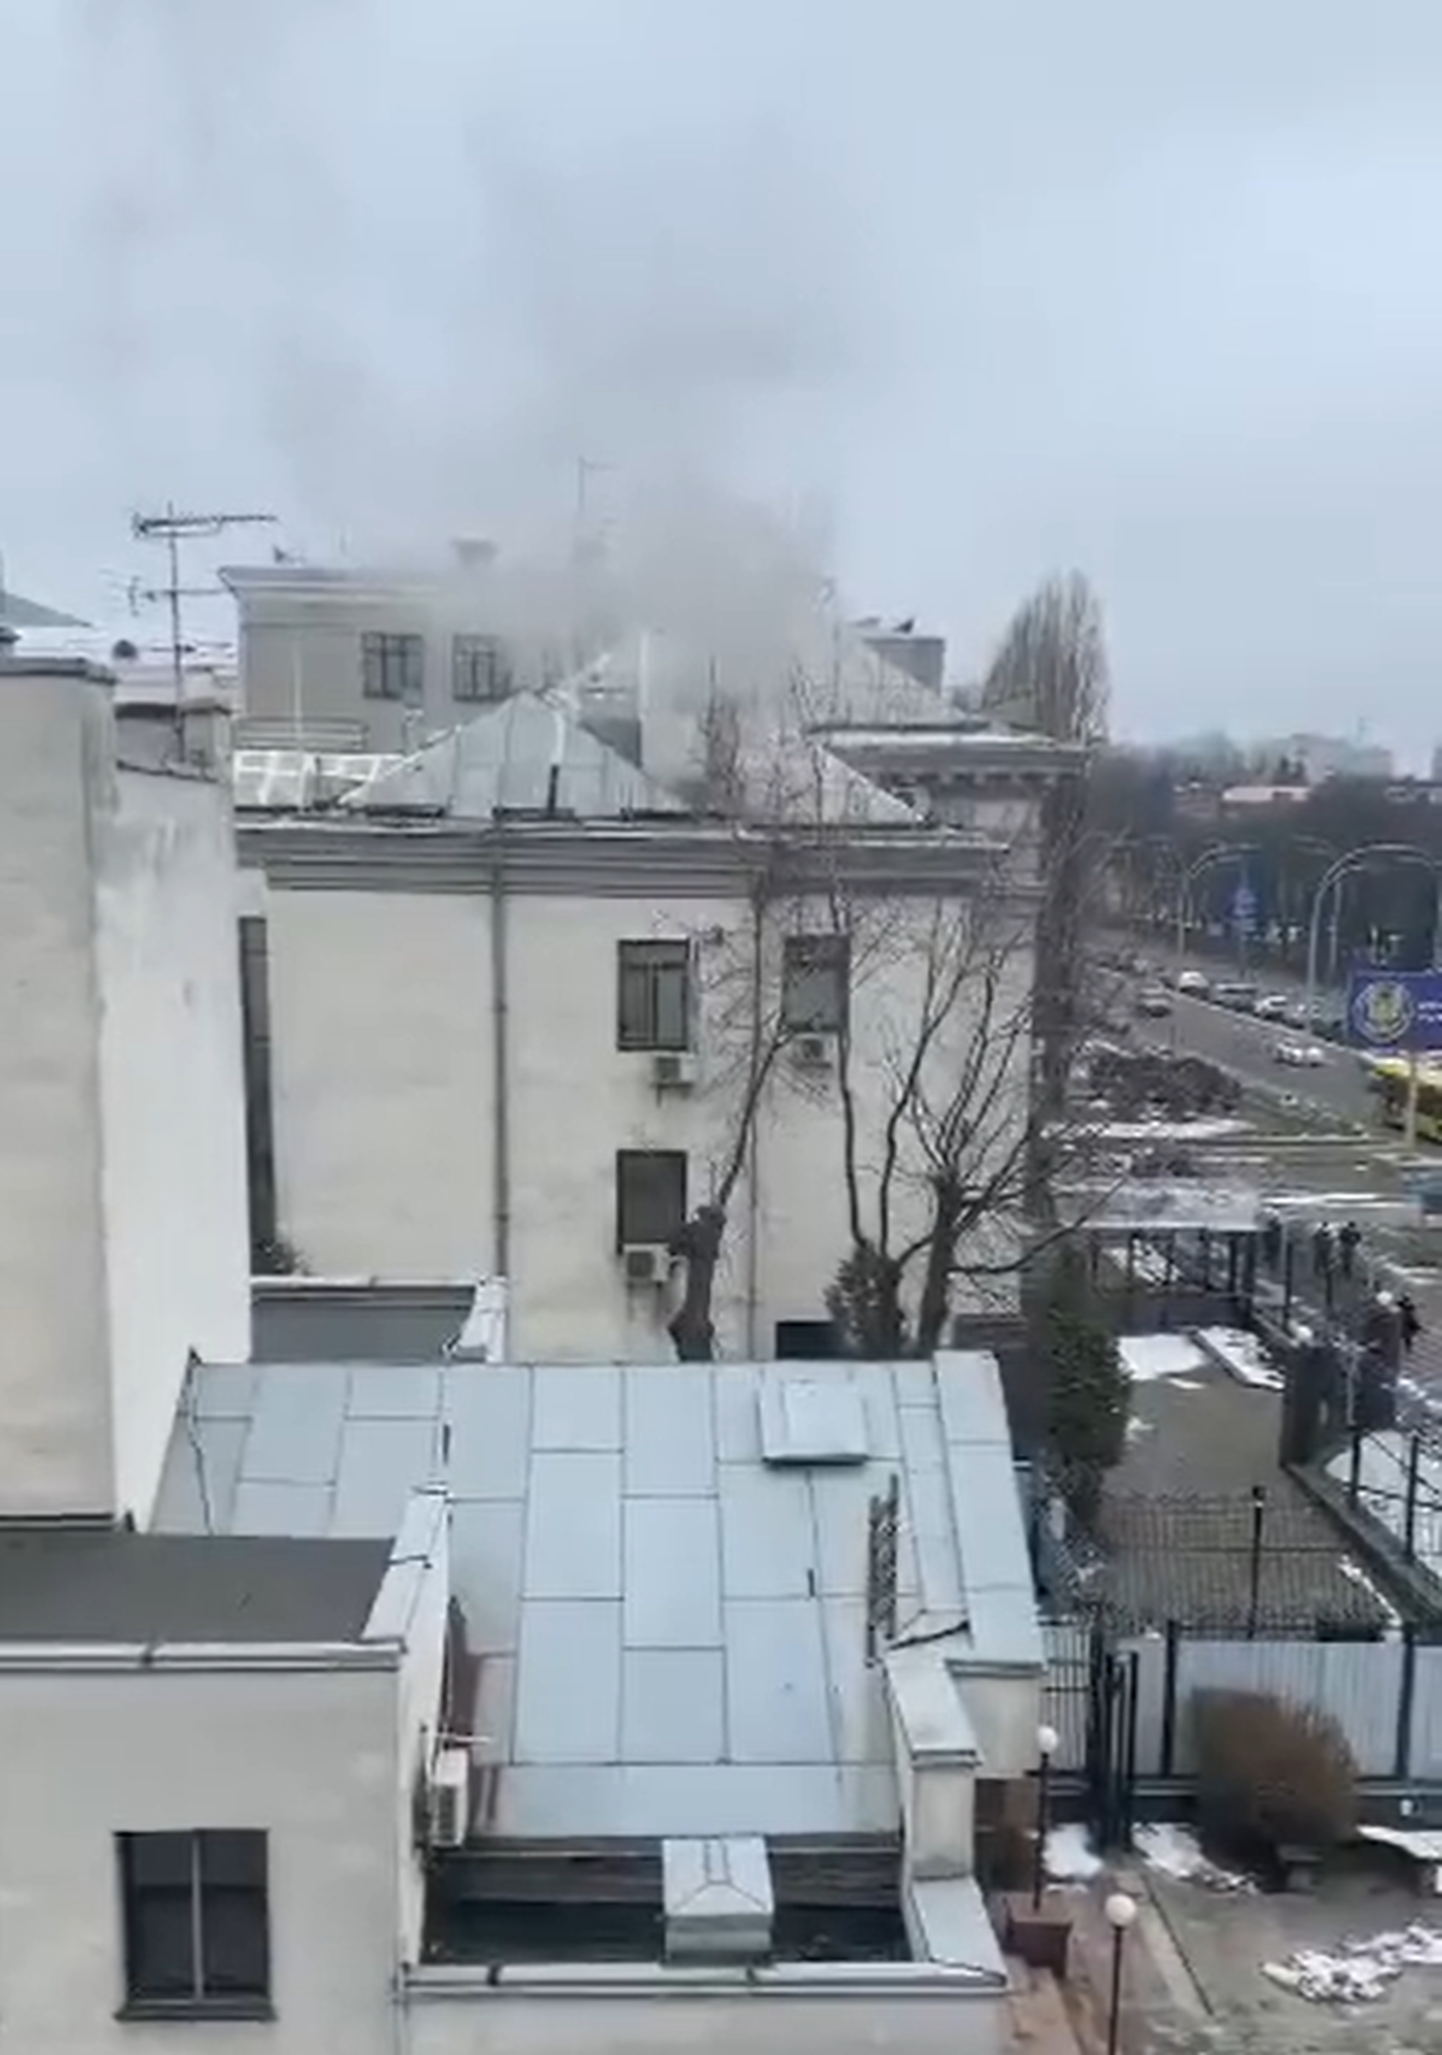 Venemaa Kiievi saatkonna korstnast märgati paksu suitsu tulevat, mis võib viidata, et venelased põletavad dokumente.